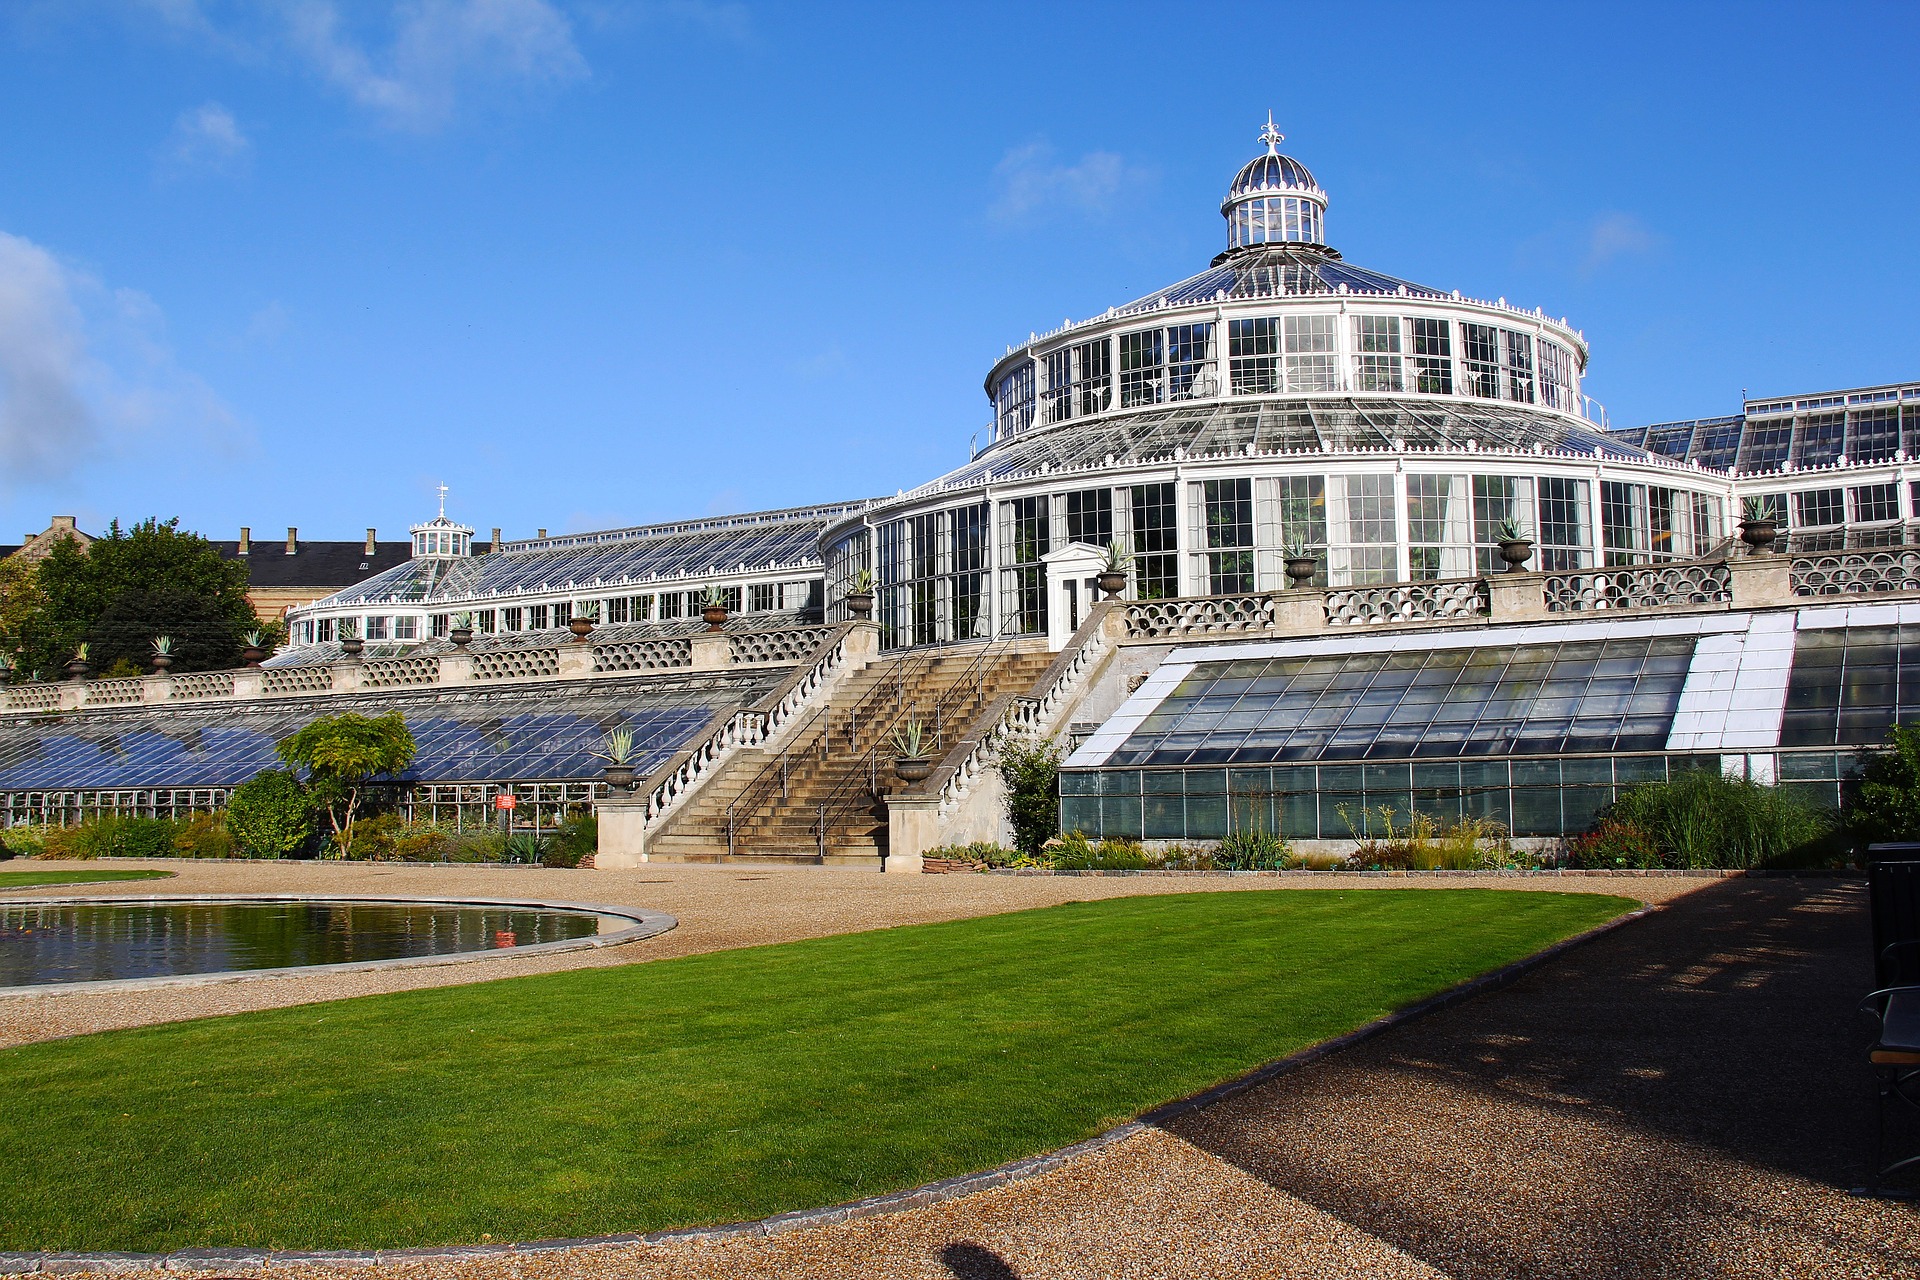 University of Copenhagen Botanical Garden